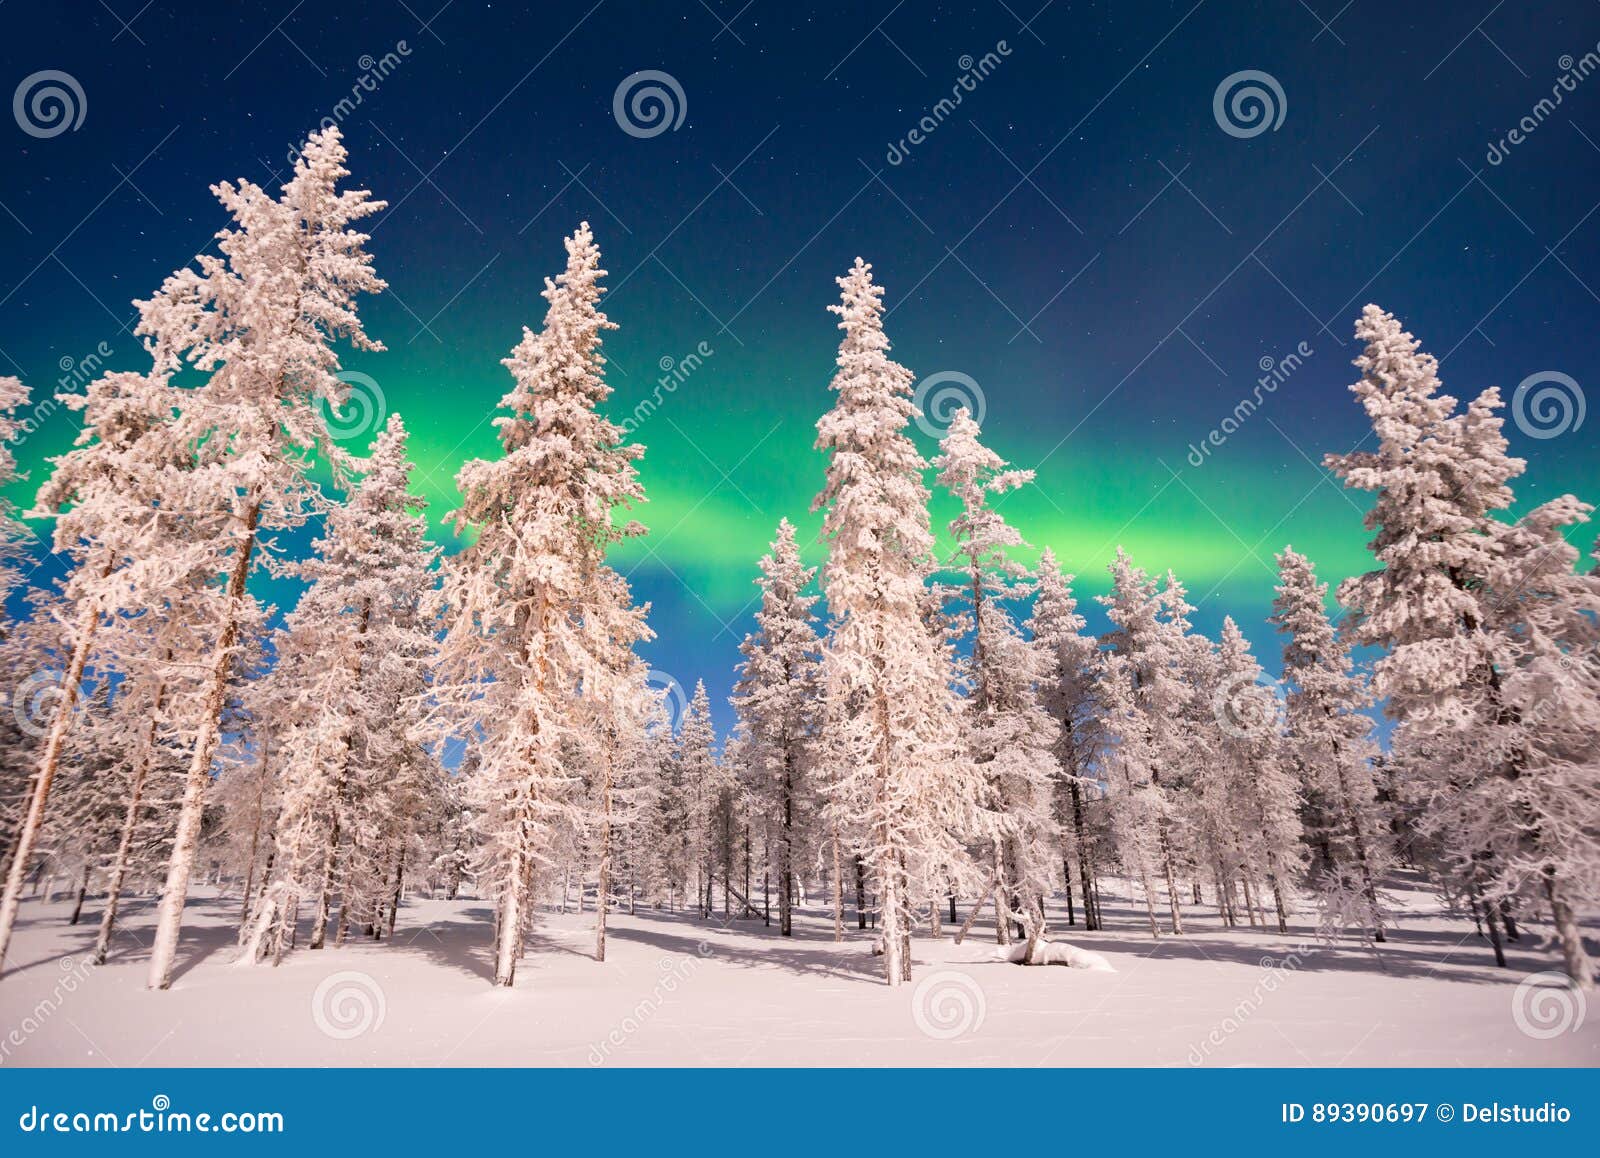 northern lights, aurora borealis in lapland finland